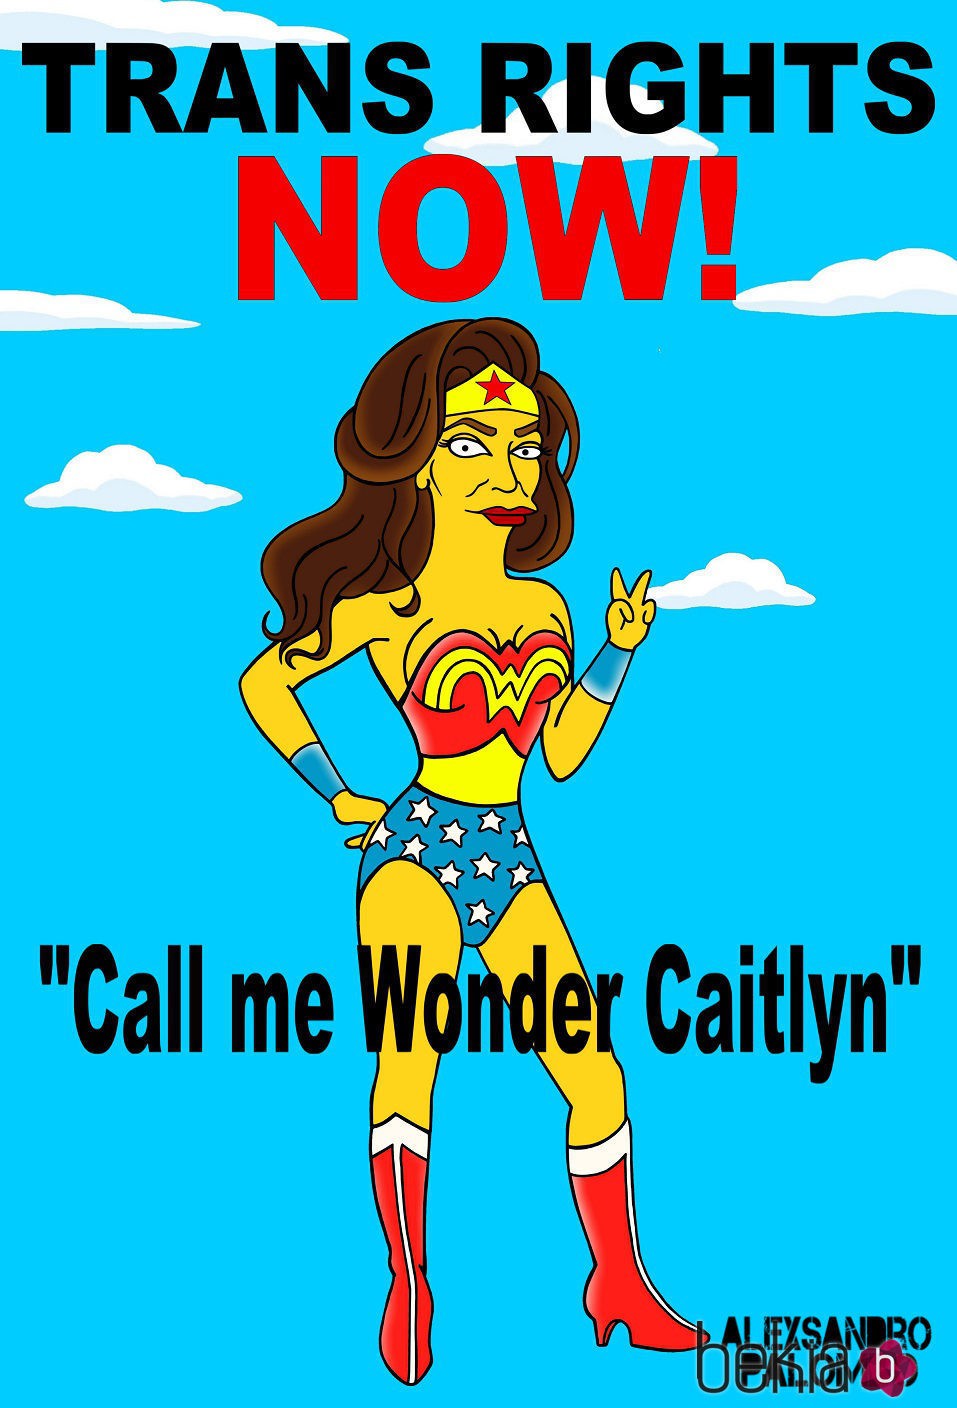 Caitlyn Jenner, convertida en superheroína para luchar por los derechos transgénero